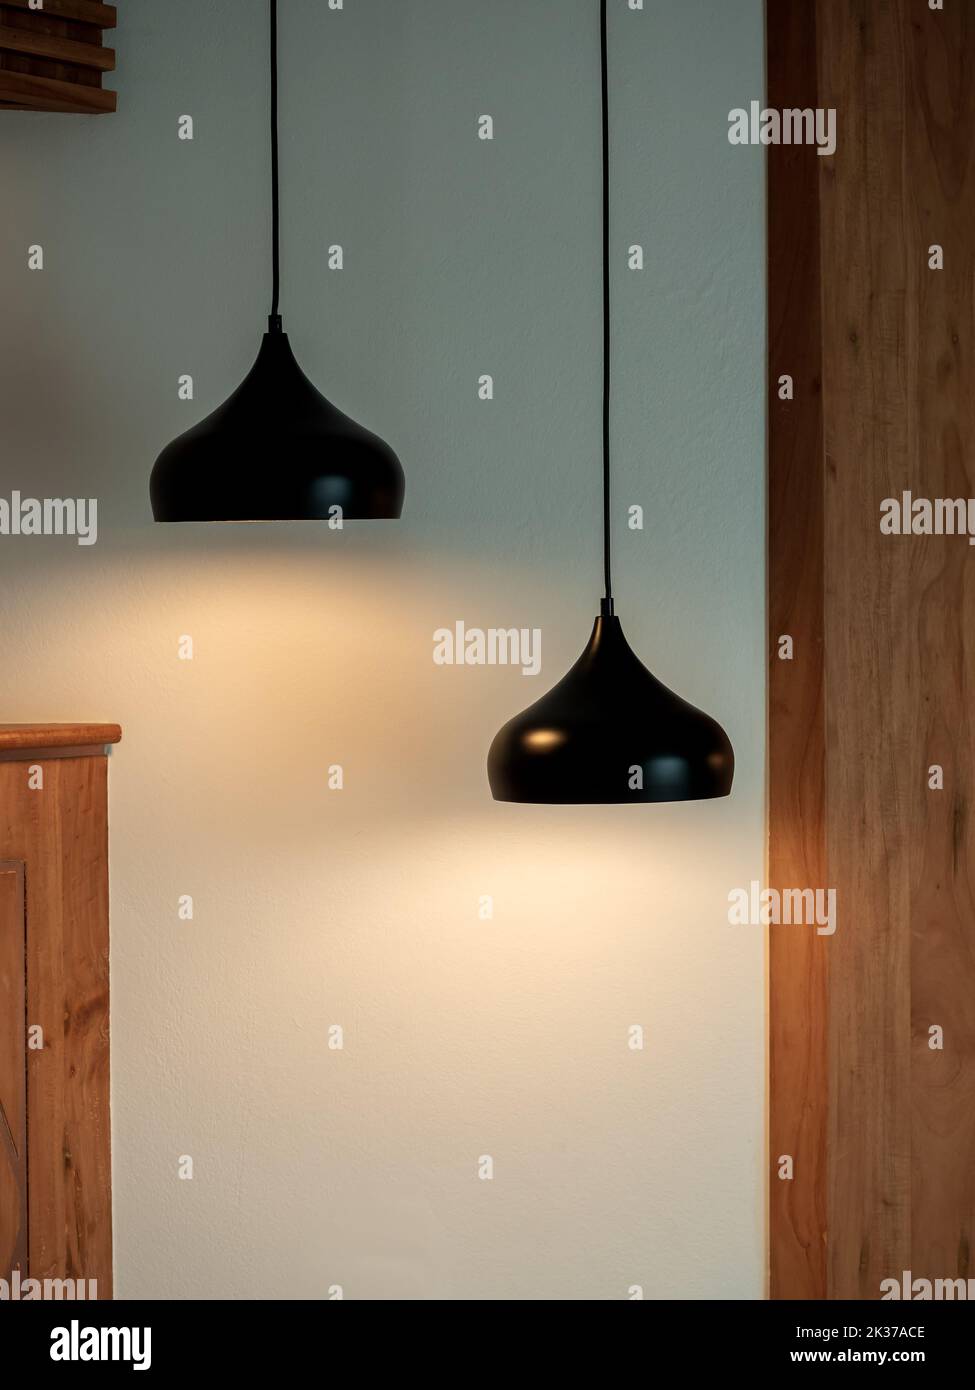 Deux plafonniers dans la pièce sombre. Deux lampes suspendues ou plafonniers ronds décorés comme un pas sur un mur blanc et en bois, de style vertical. Banque D'Images